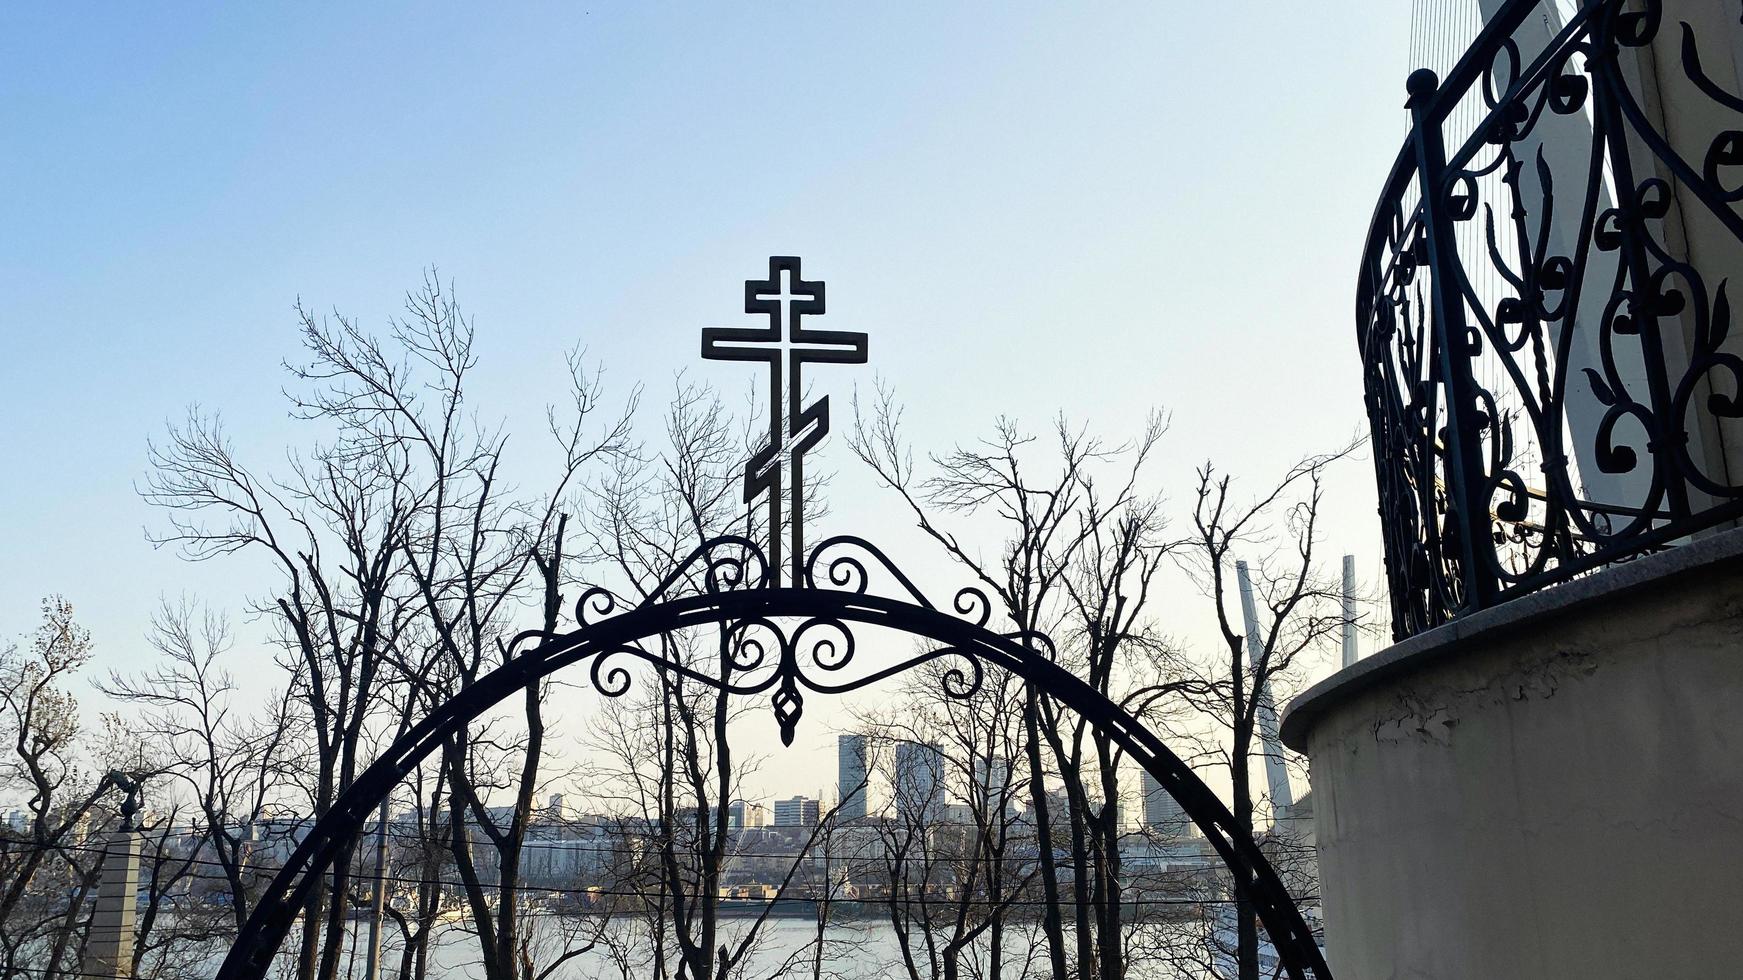 vladivostok, russie. arc avec une croix en métal sur le fond de la ville photo